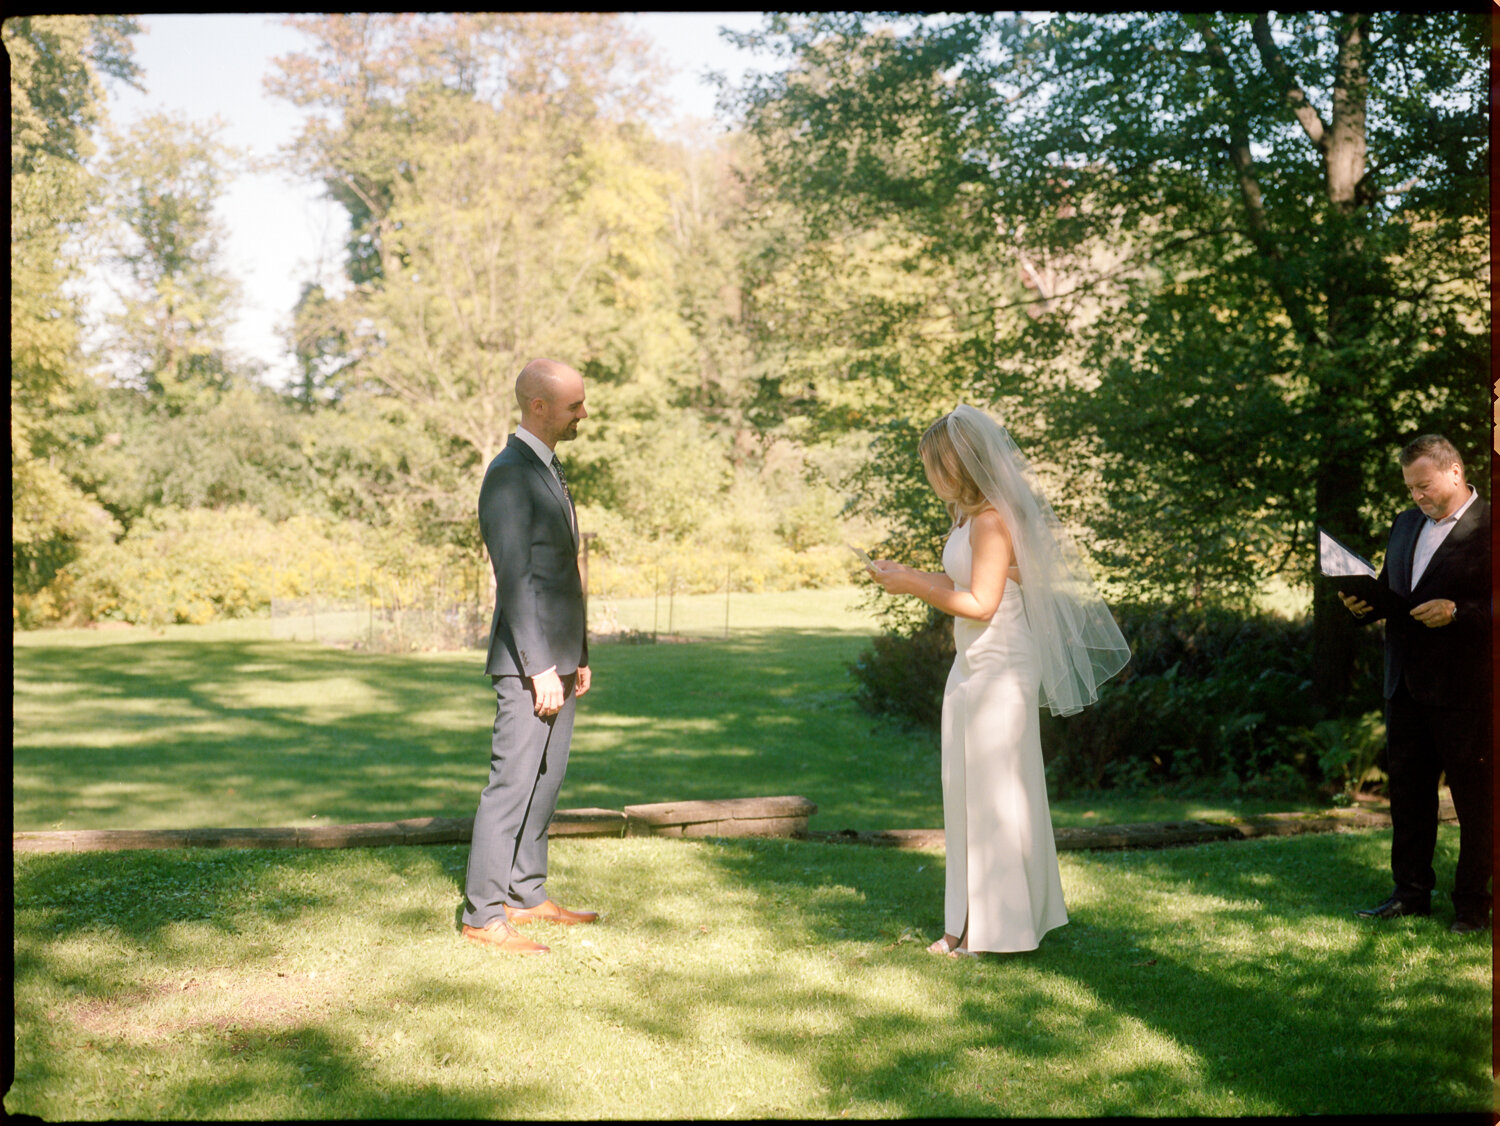 Analog-Film-Micro-Wedding-Photos-Inspiration-Backyard-Toronto-Ontario-42.JPG